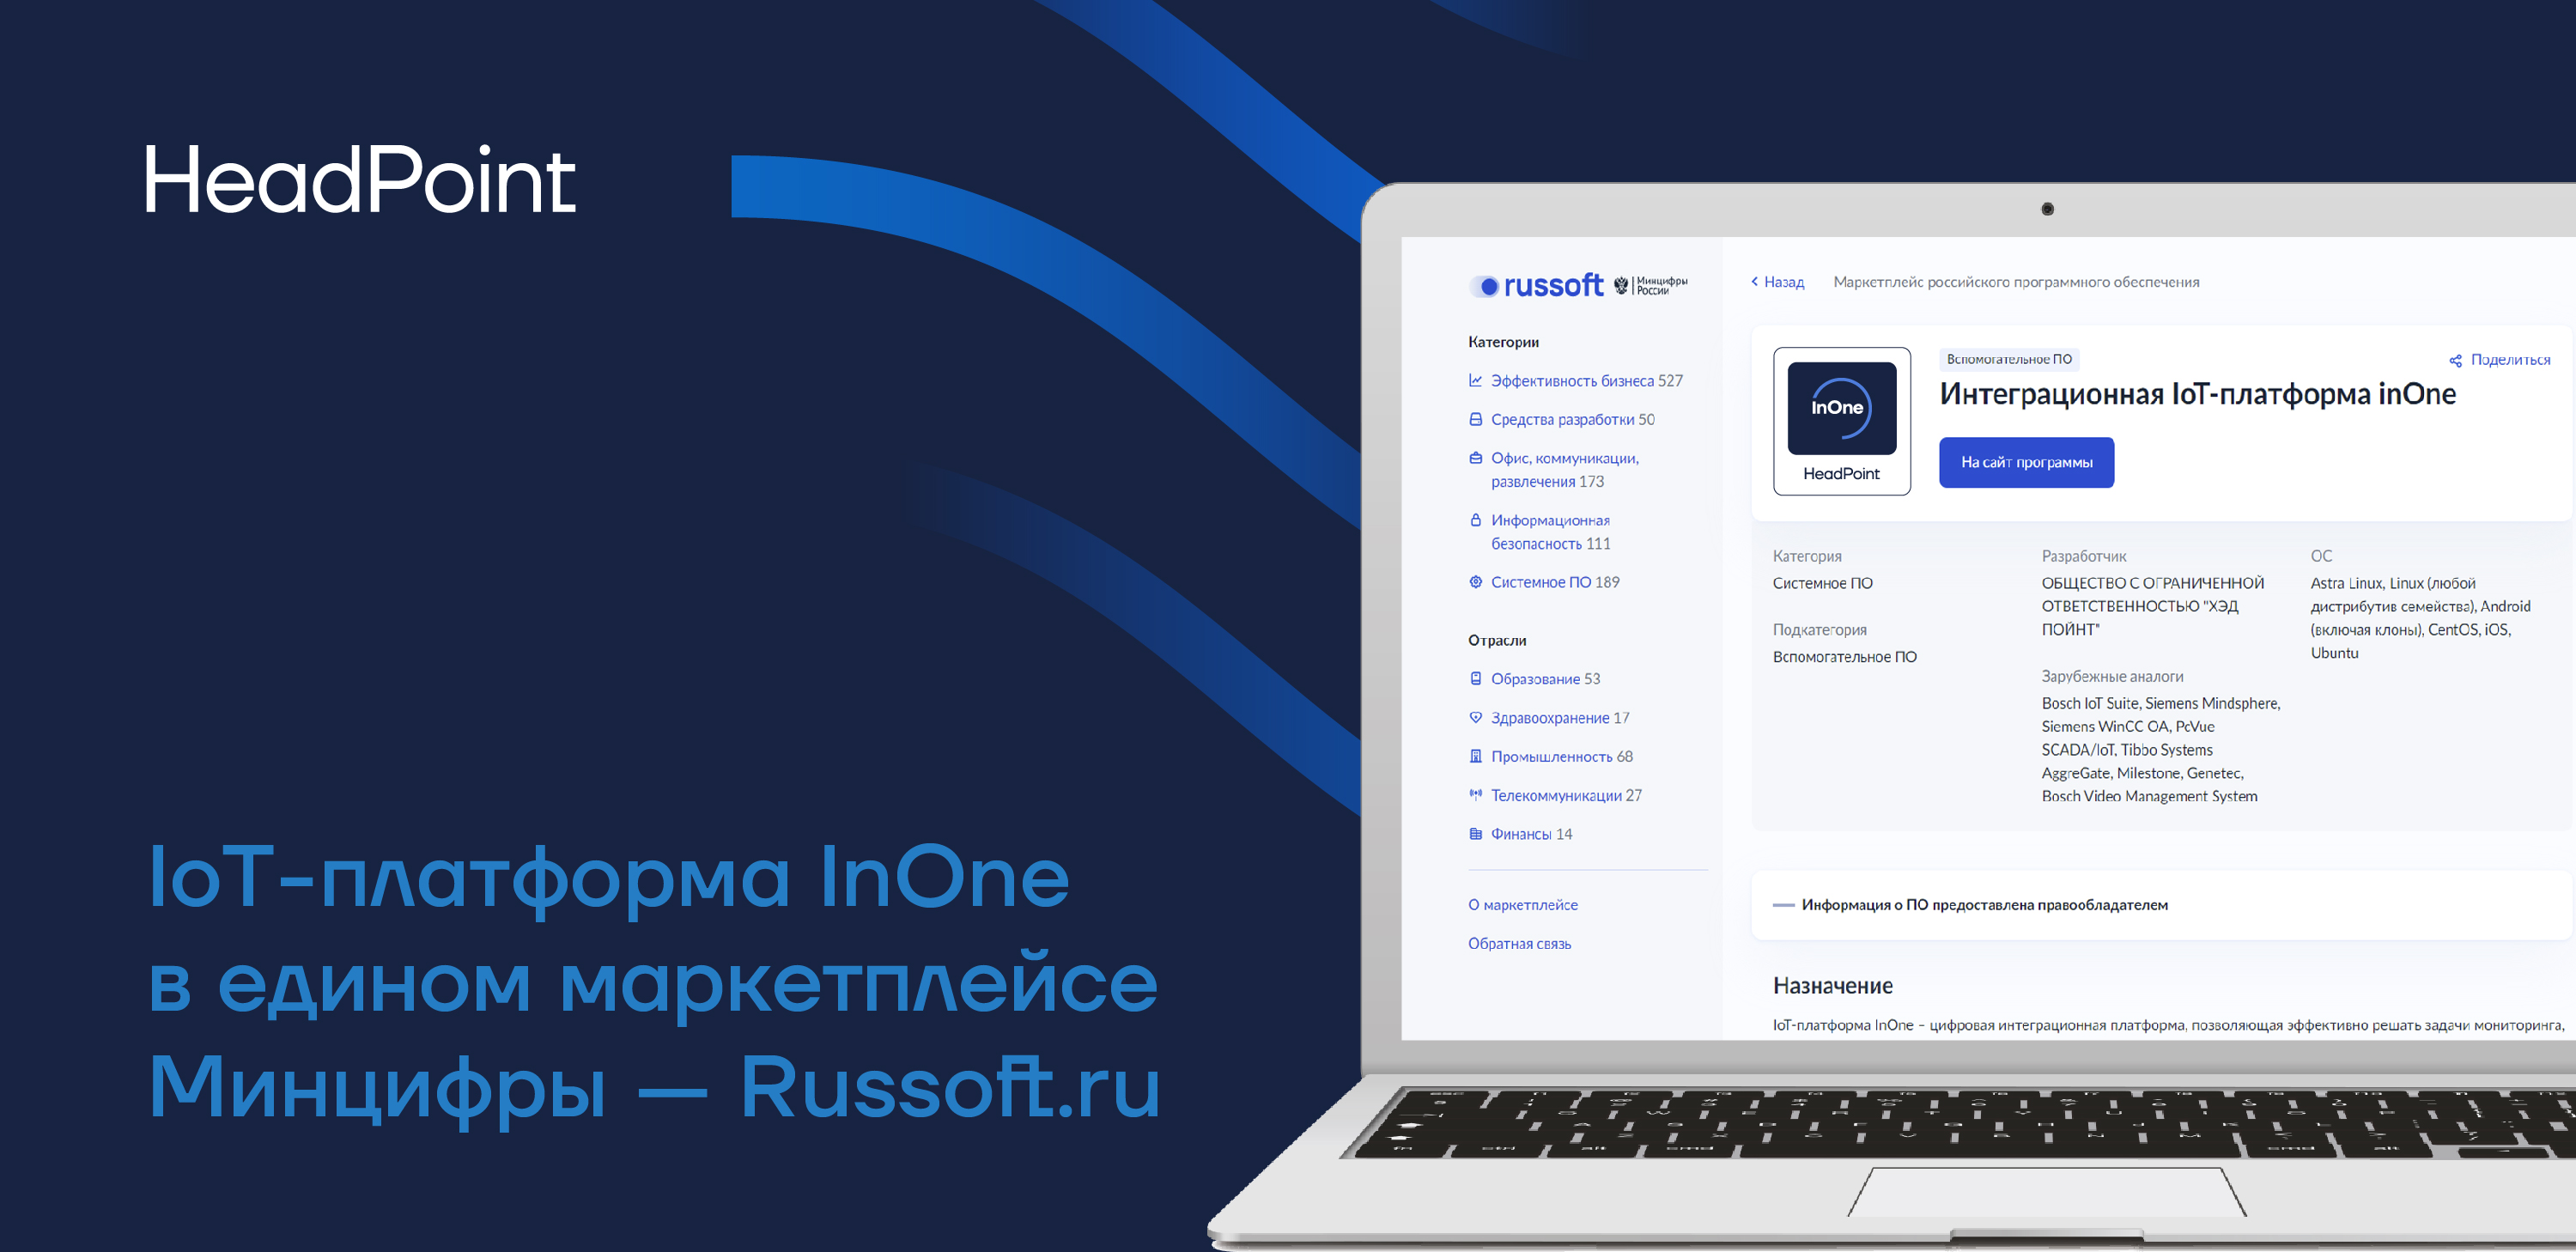 HeadPoint в маркетплейсе российского ПО Russoft